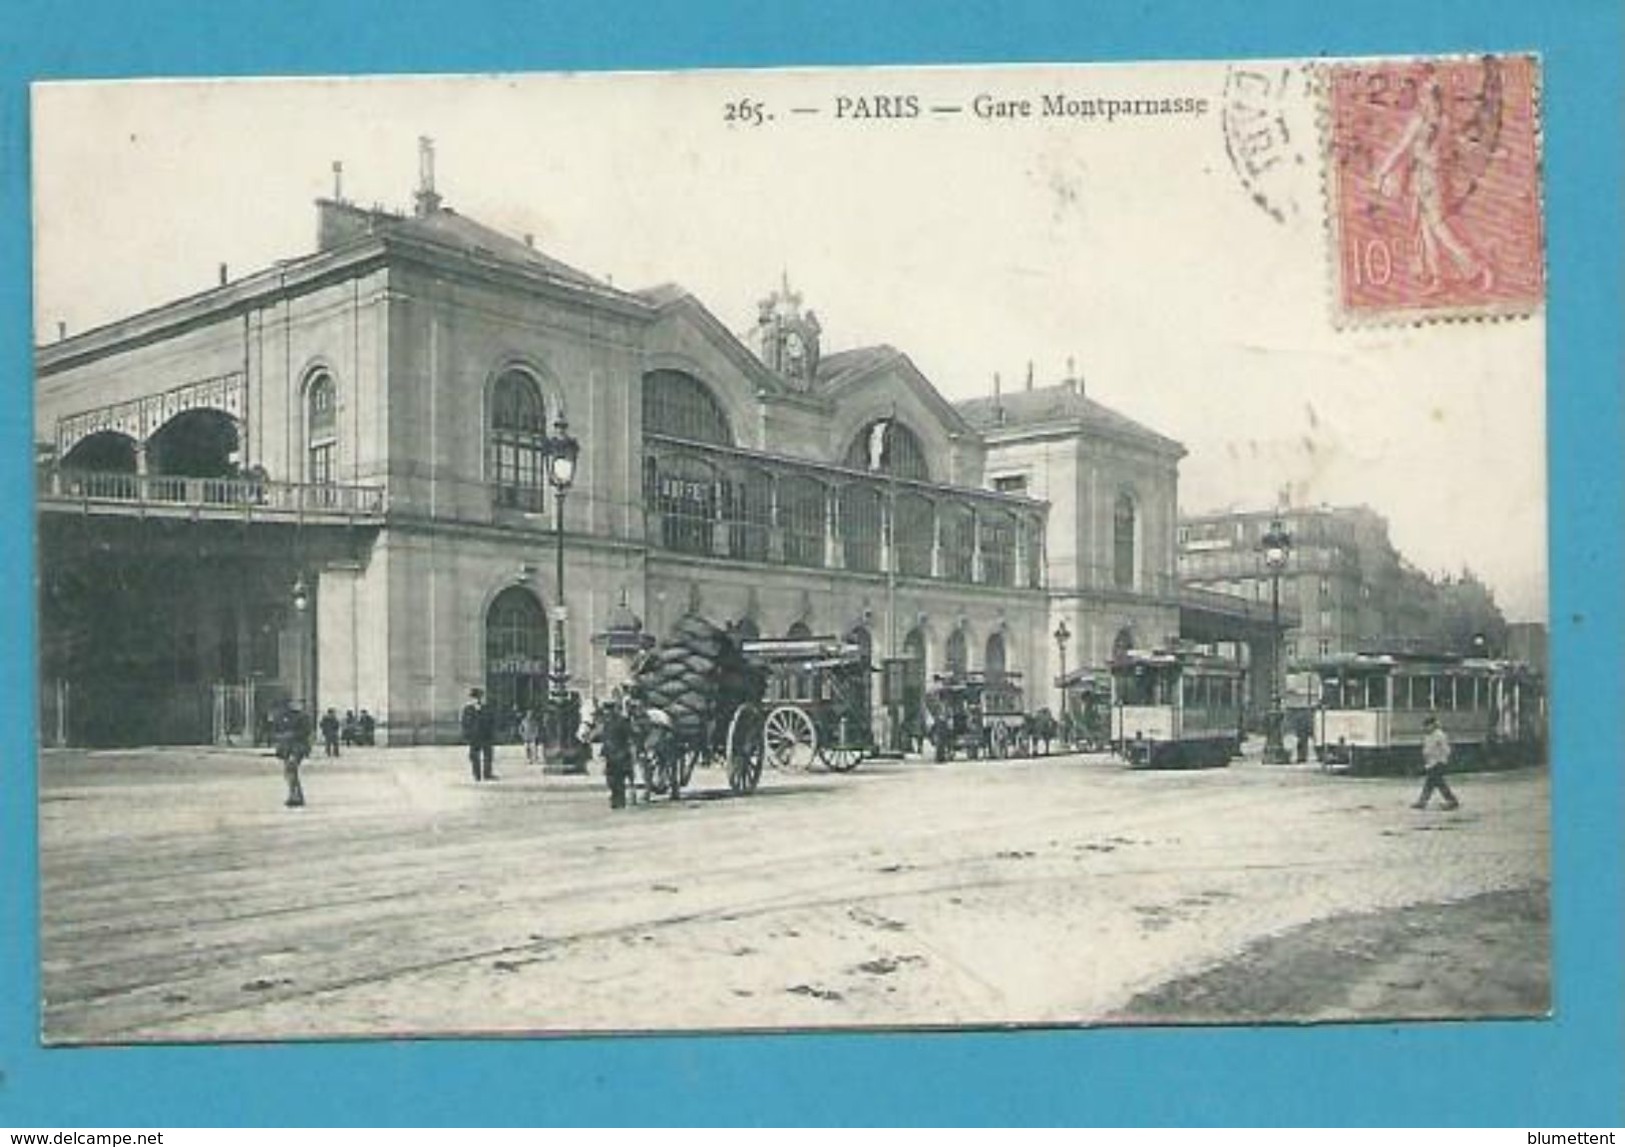 CPA 265 - Chemin De Fer Gare Montparnasse PARIS - Metro, Stations